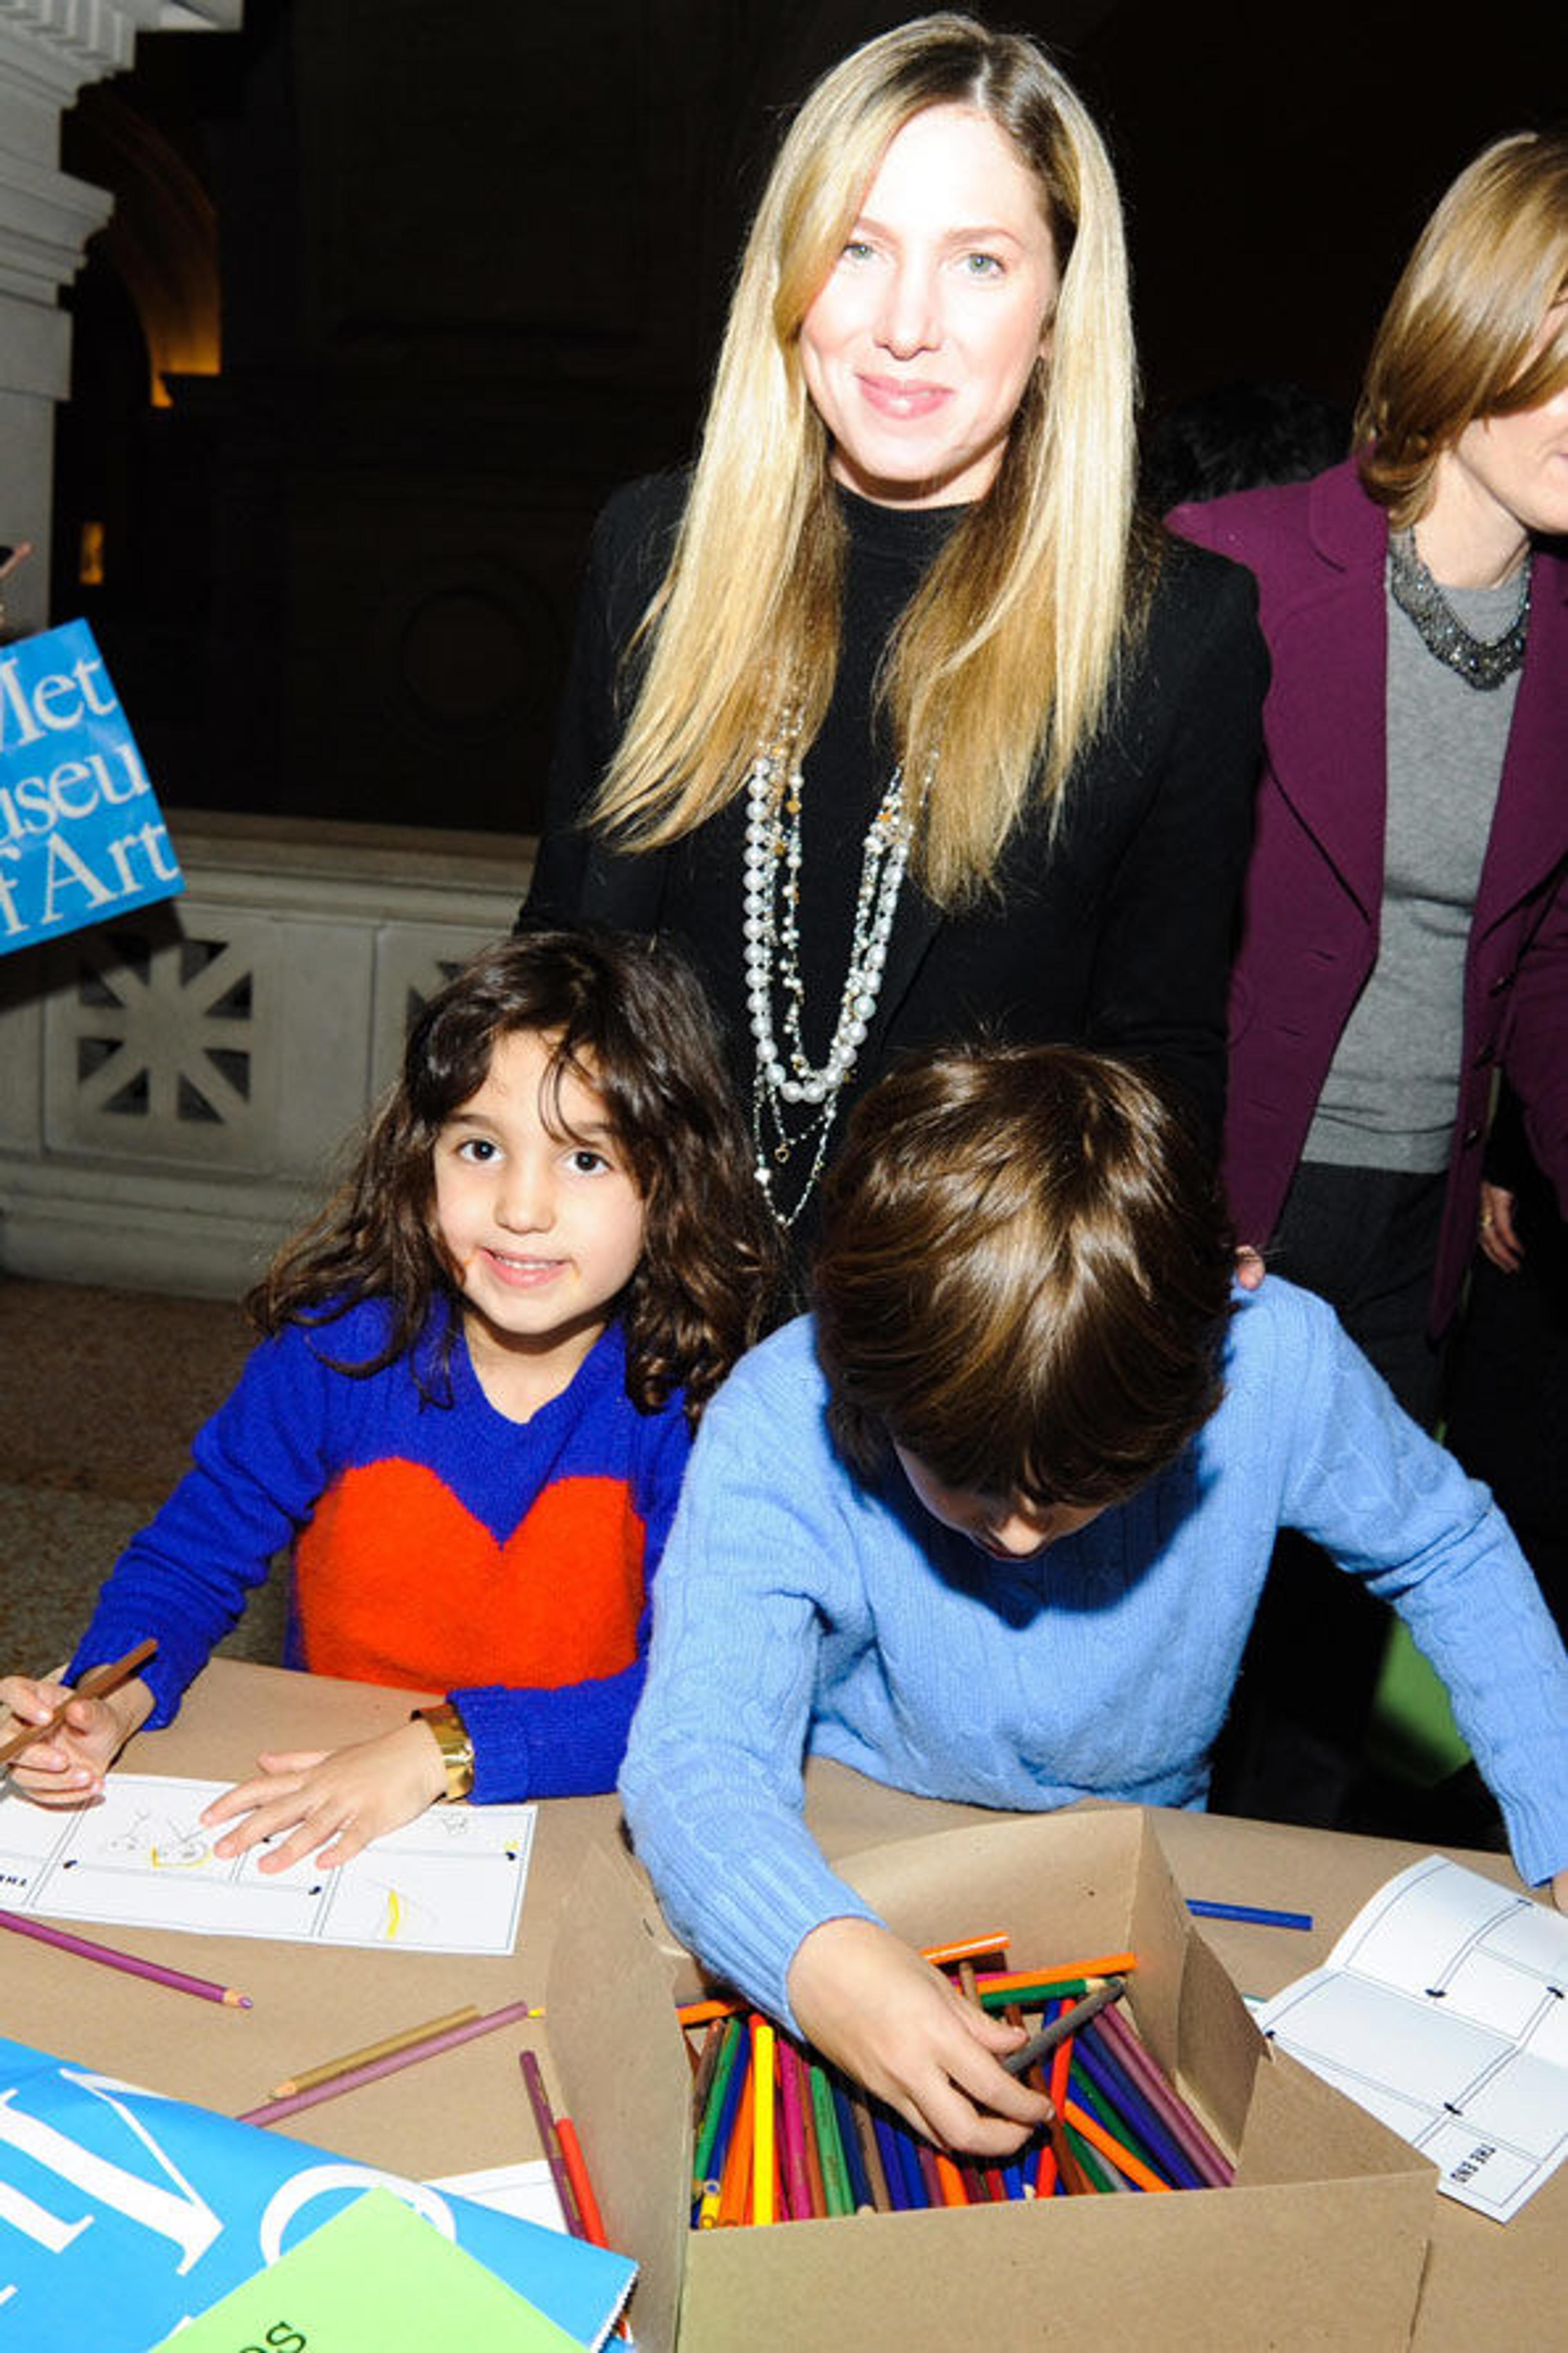 Co-chair Jill Swid Rosen and children